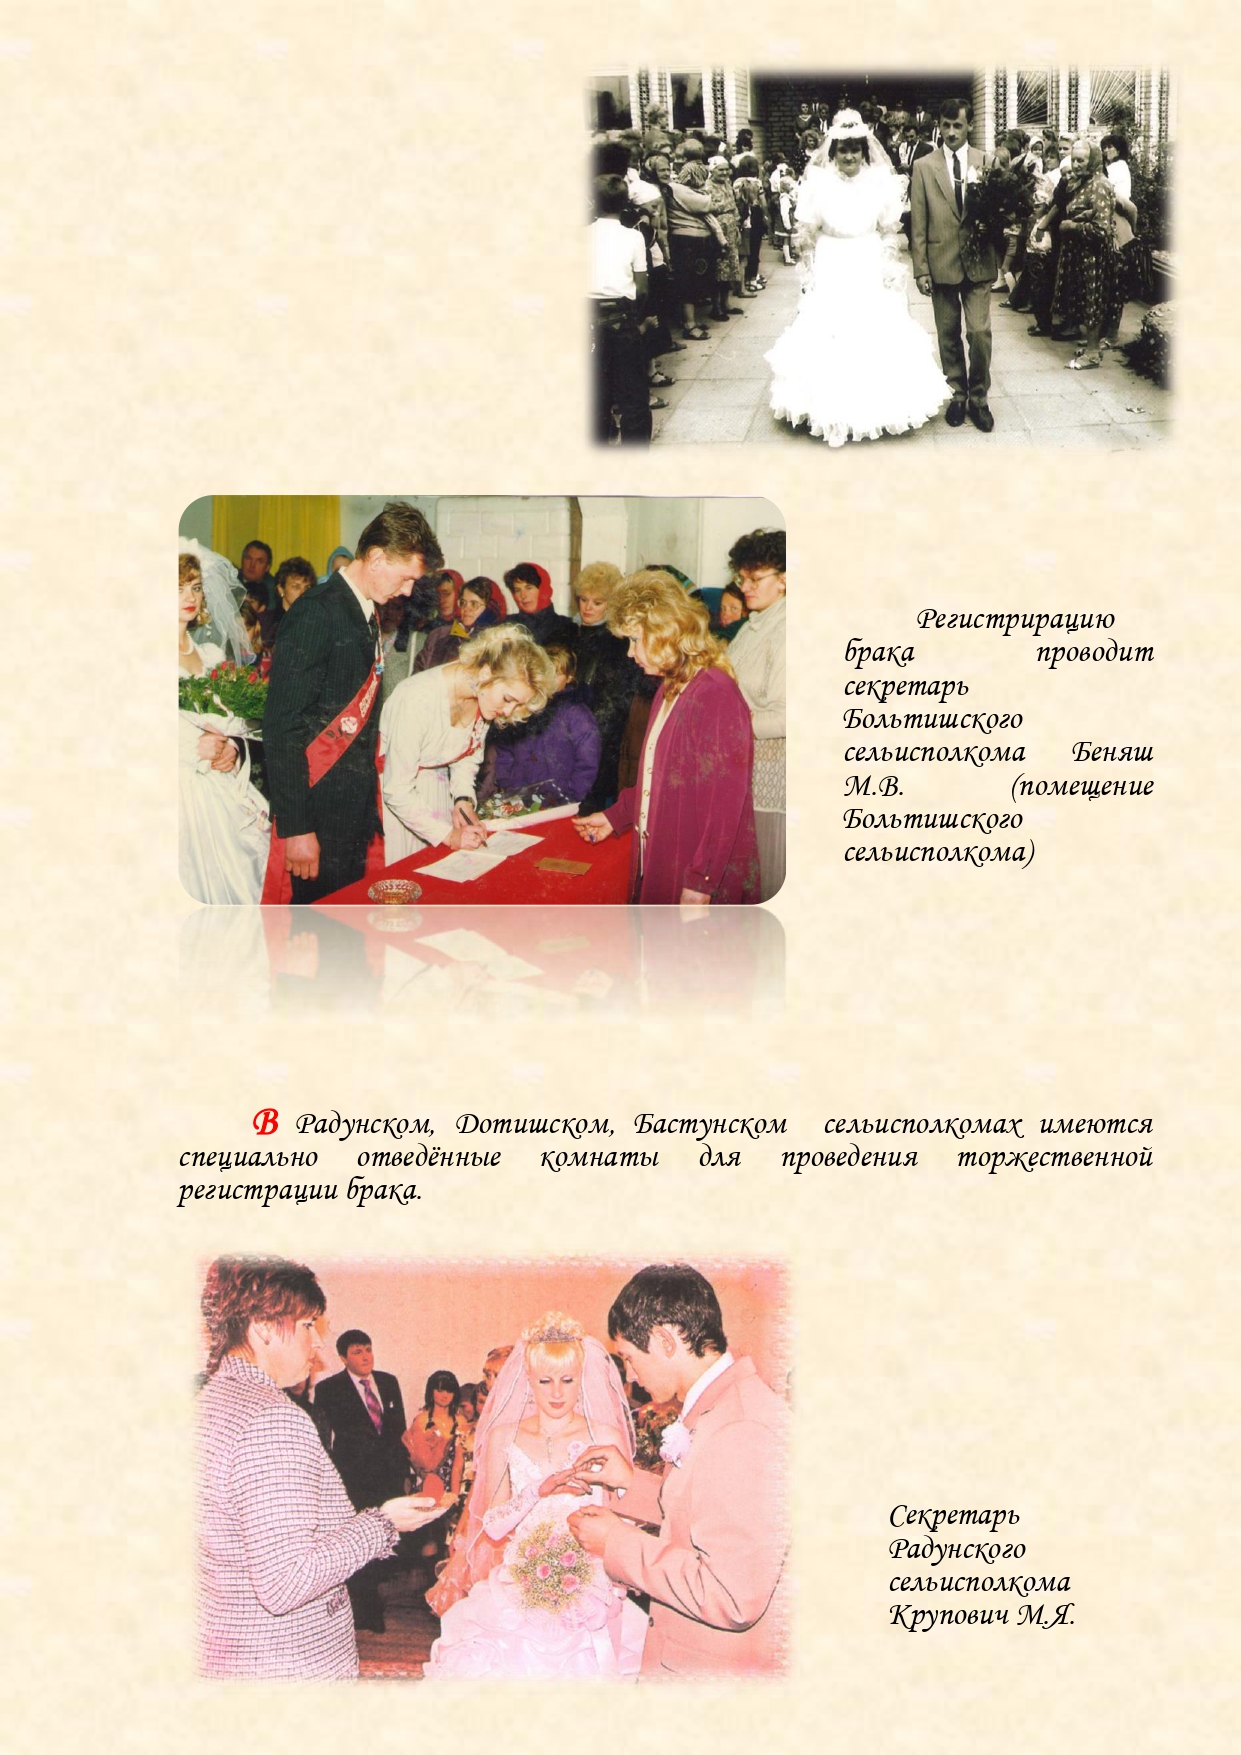 История органов загса Вороновского района с изменениями (1)_page-0022.jpg